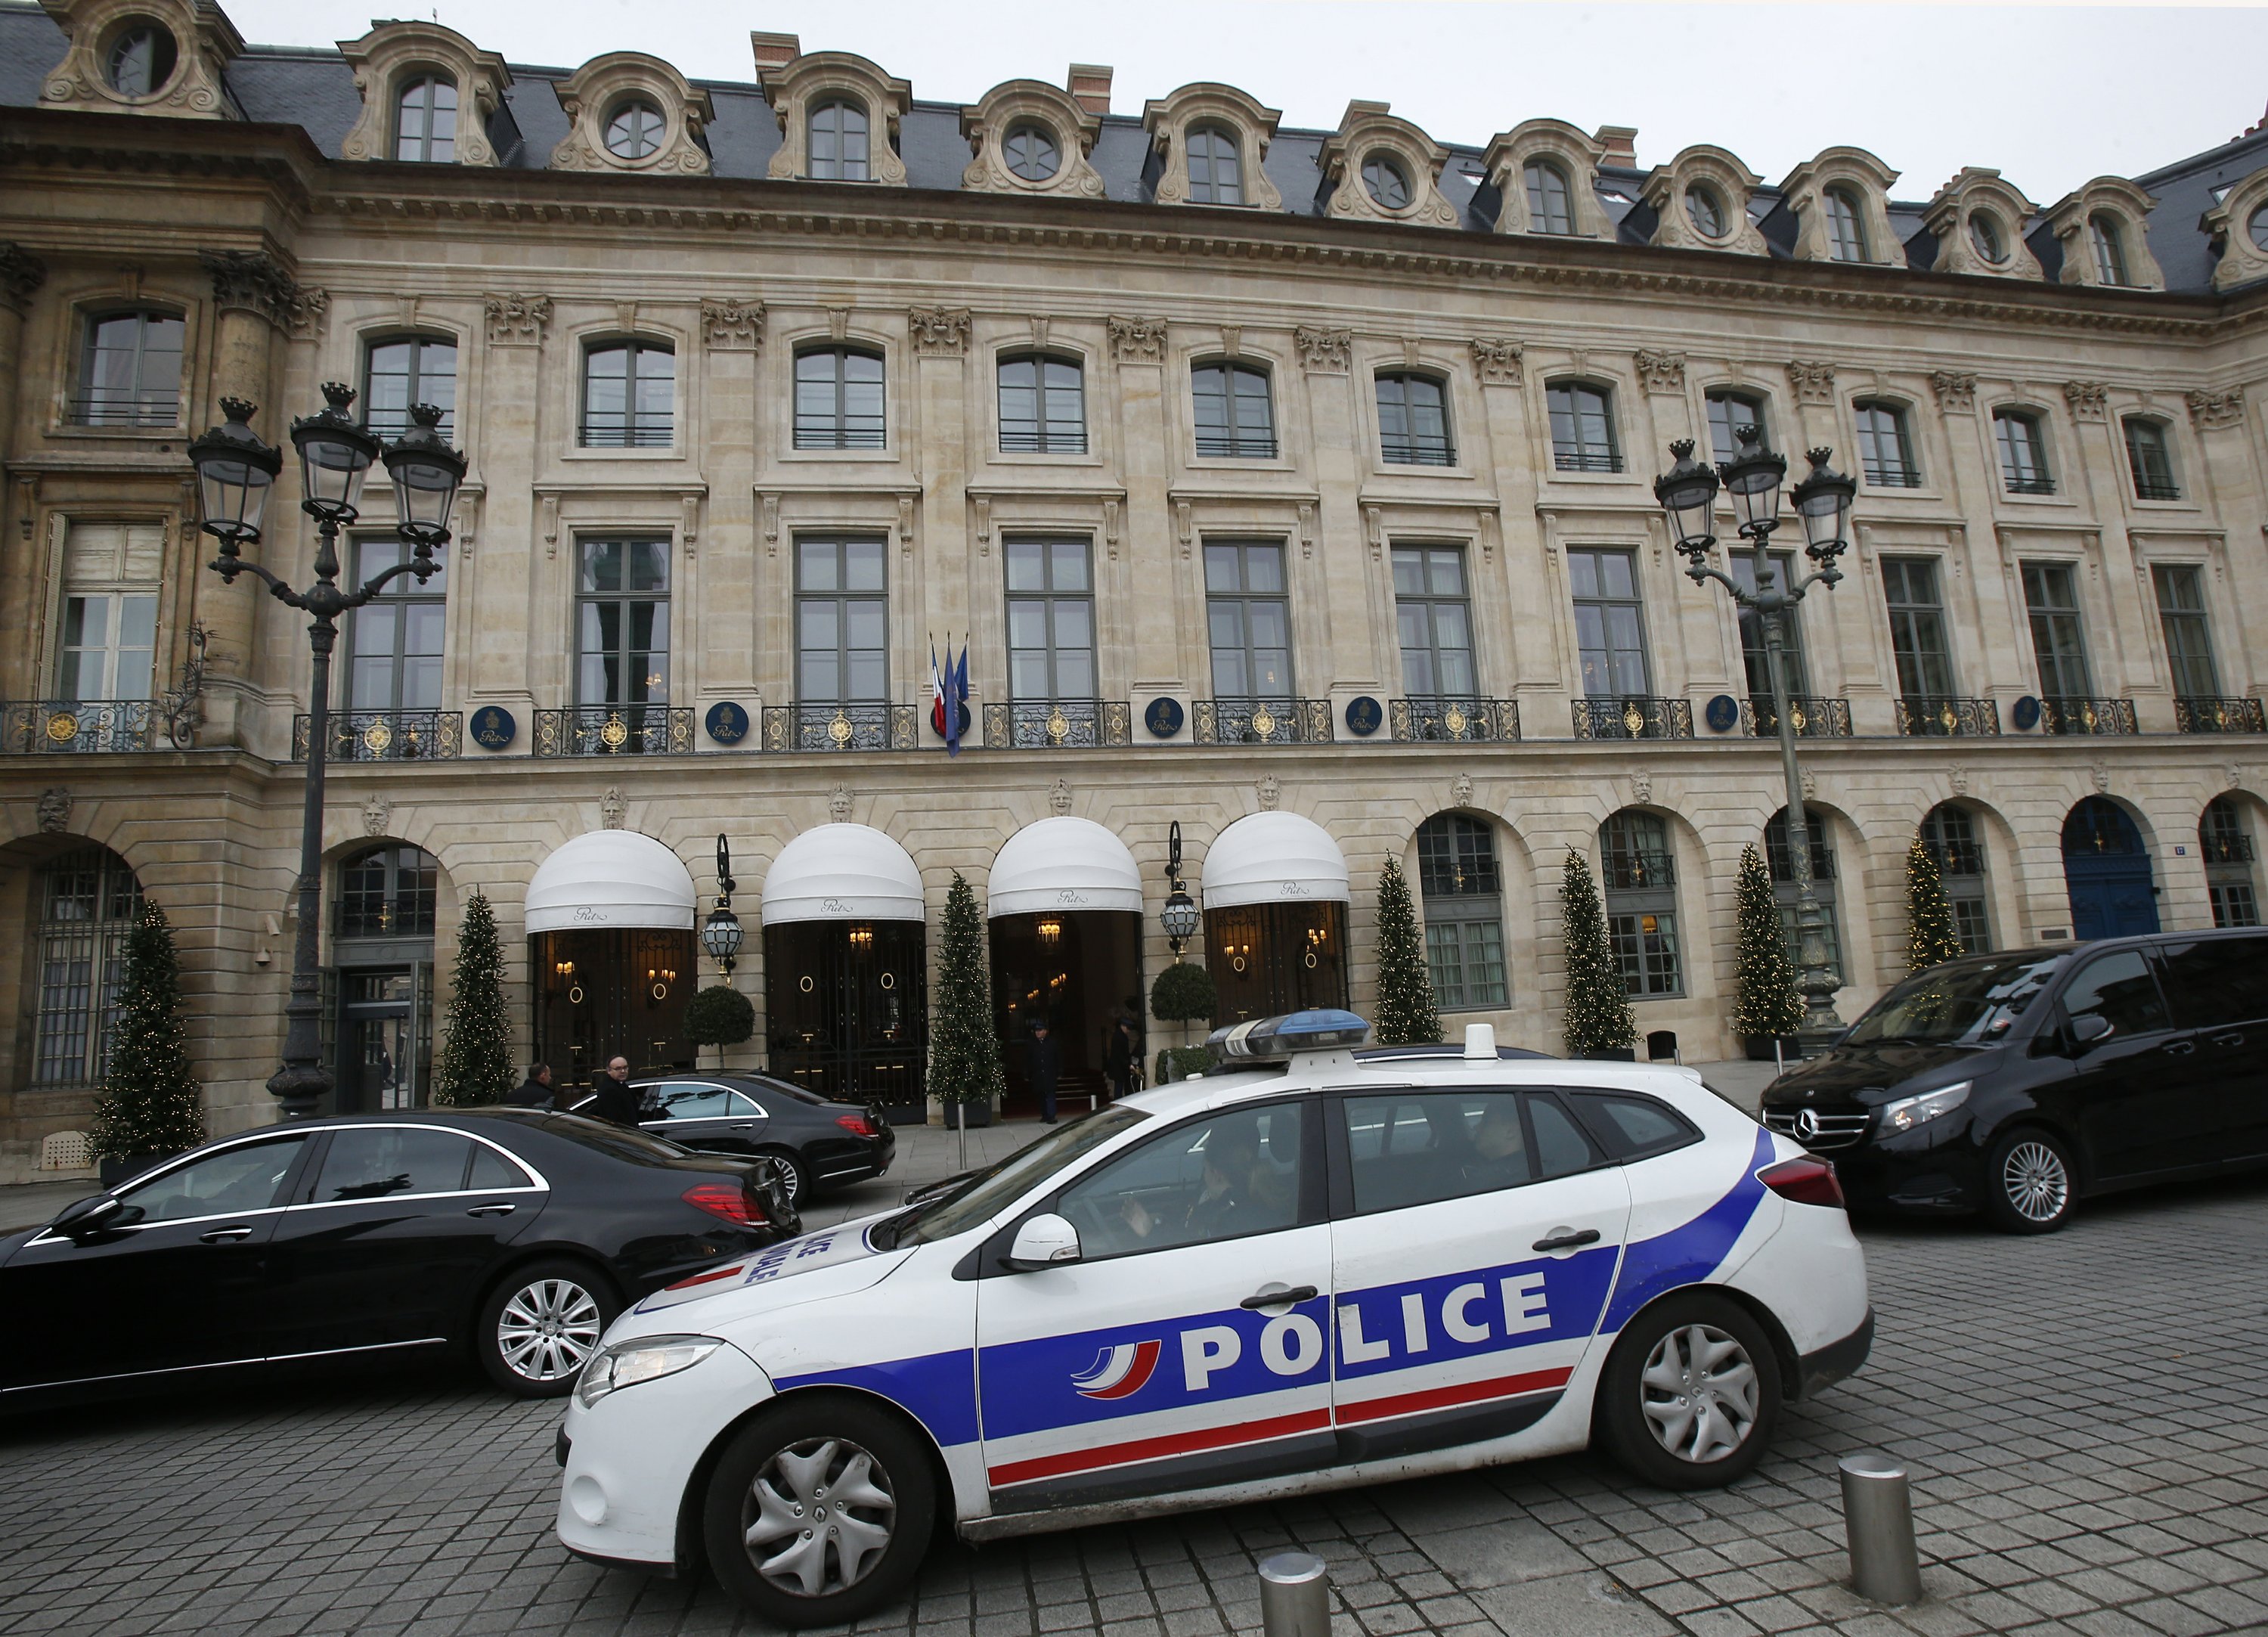 cartier jewelry heist in paris